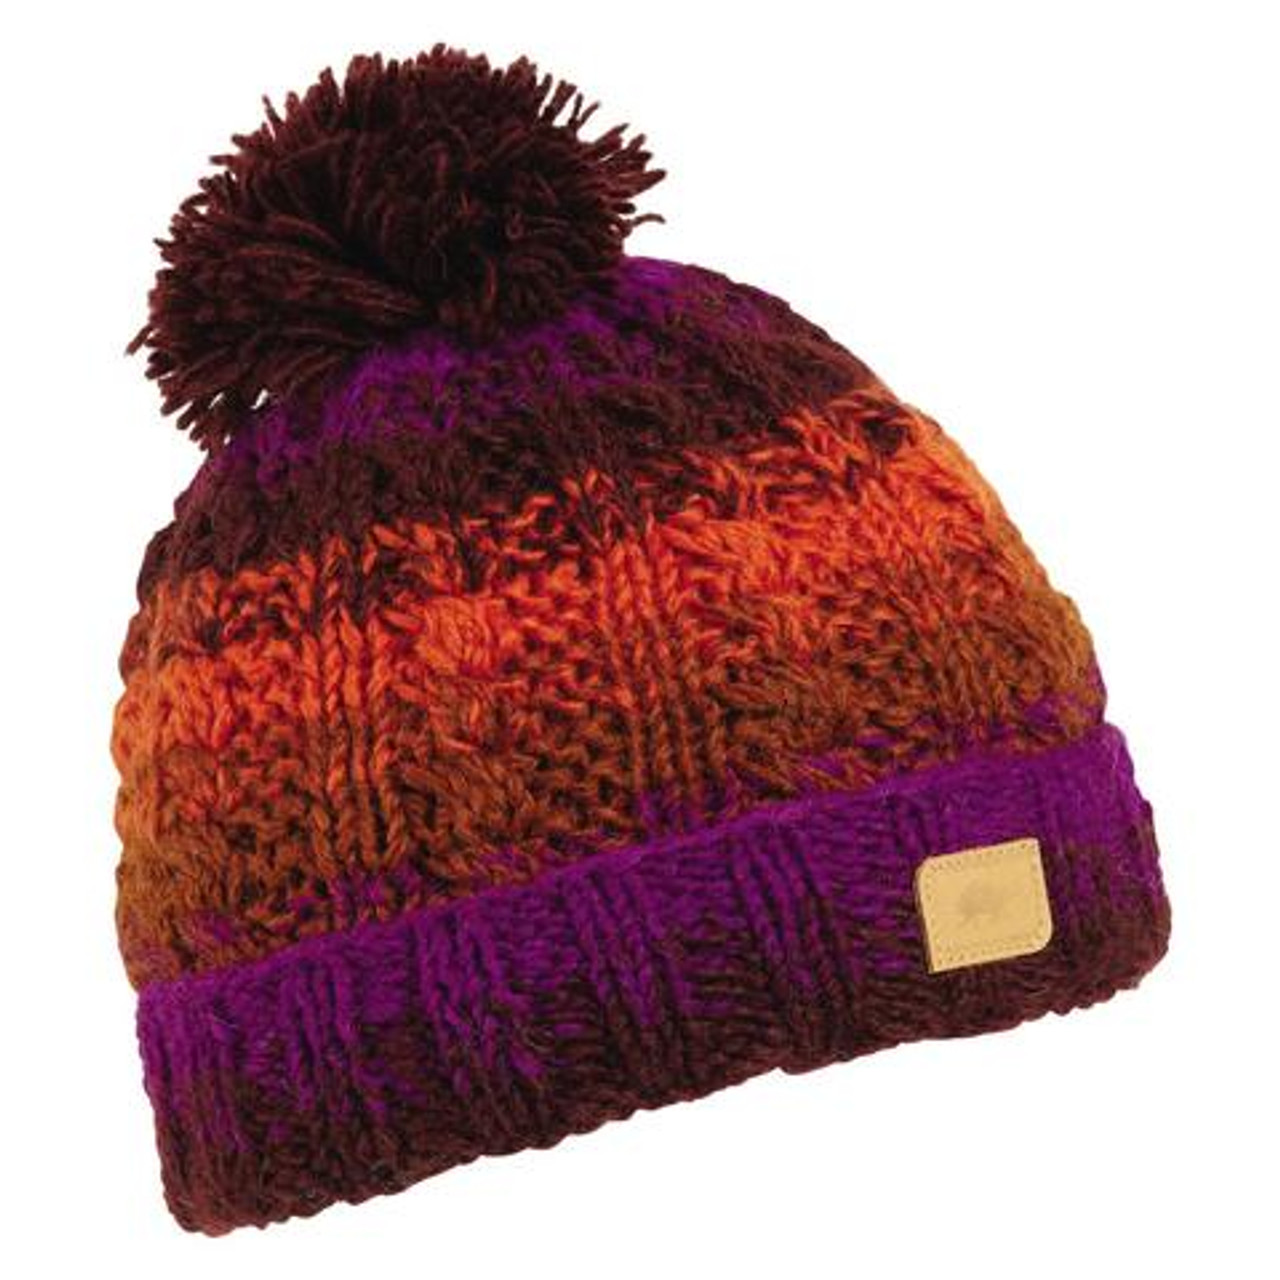 Knit Hat Hemp KI-K-AHP - Ganesh Himal Trading